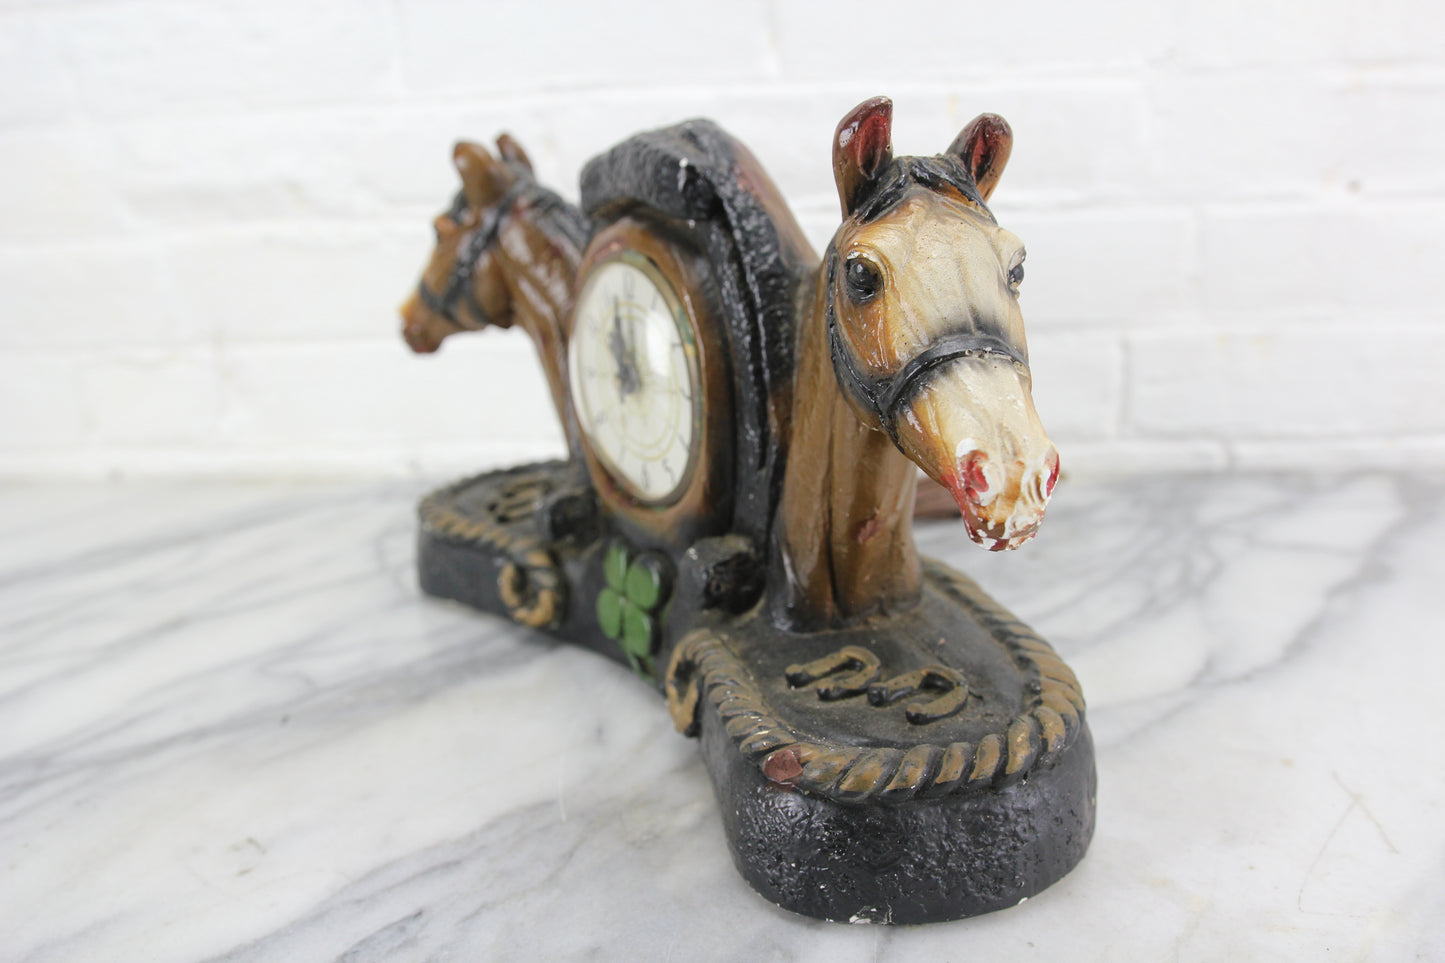 Good Luck Horseshoe Shamrock and Horses Chalkware Clock, Lanshire